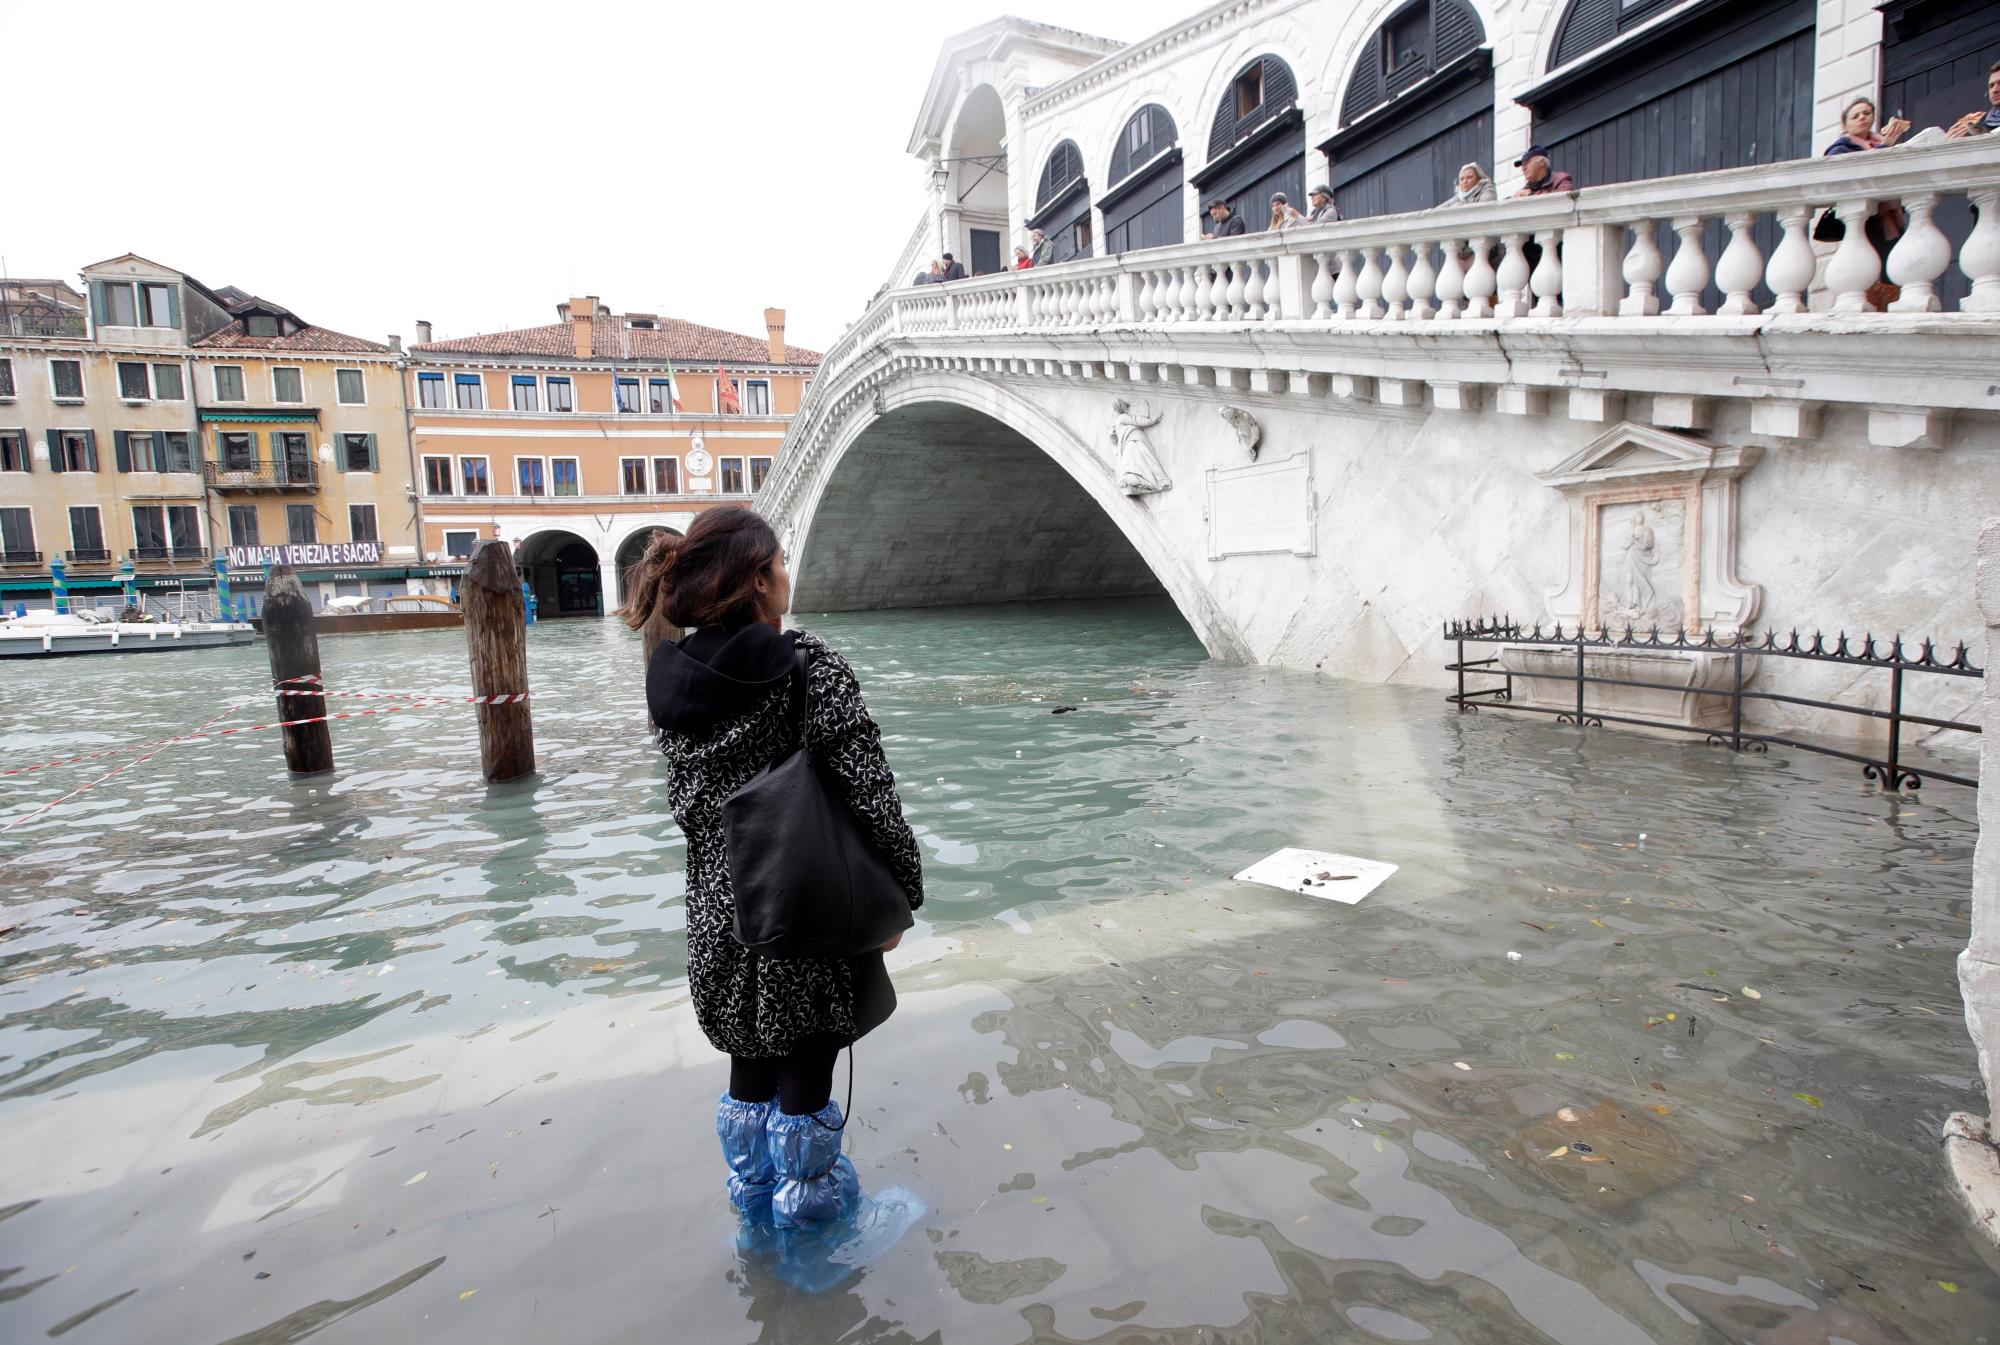 Una mujer mira el Puente de Rialto durante el apogeo, en Venecia, el miércoles 13 de noviembre de 2019. La marca del apogeo golpeó 187 centímetros (74 pulgadas) el martes 12 de noviembre de 2019, lo que significa más del 85% del La ciudad fue inundada. El nivel más alto jamás registrado fue de 194 centímetros (76 pulgadas) durante las inundaciones infames en 1966. 